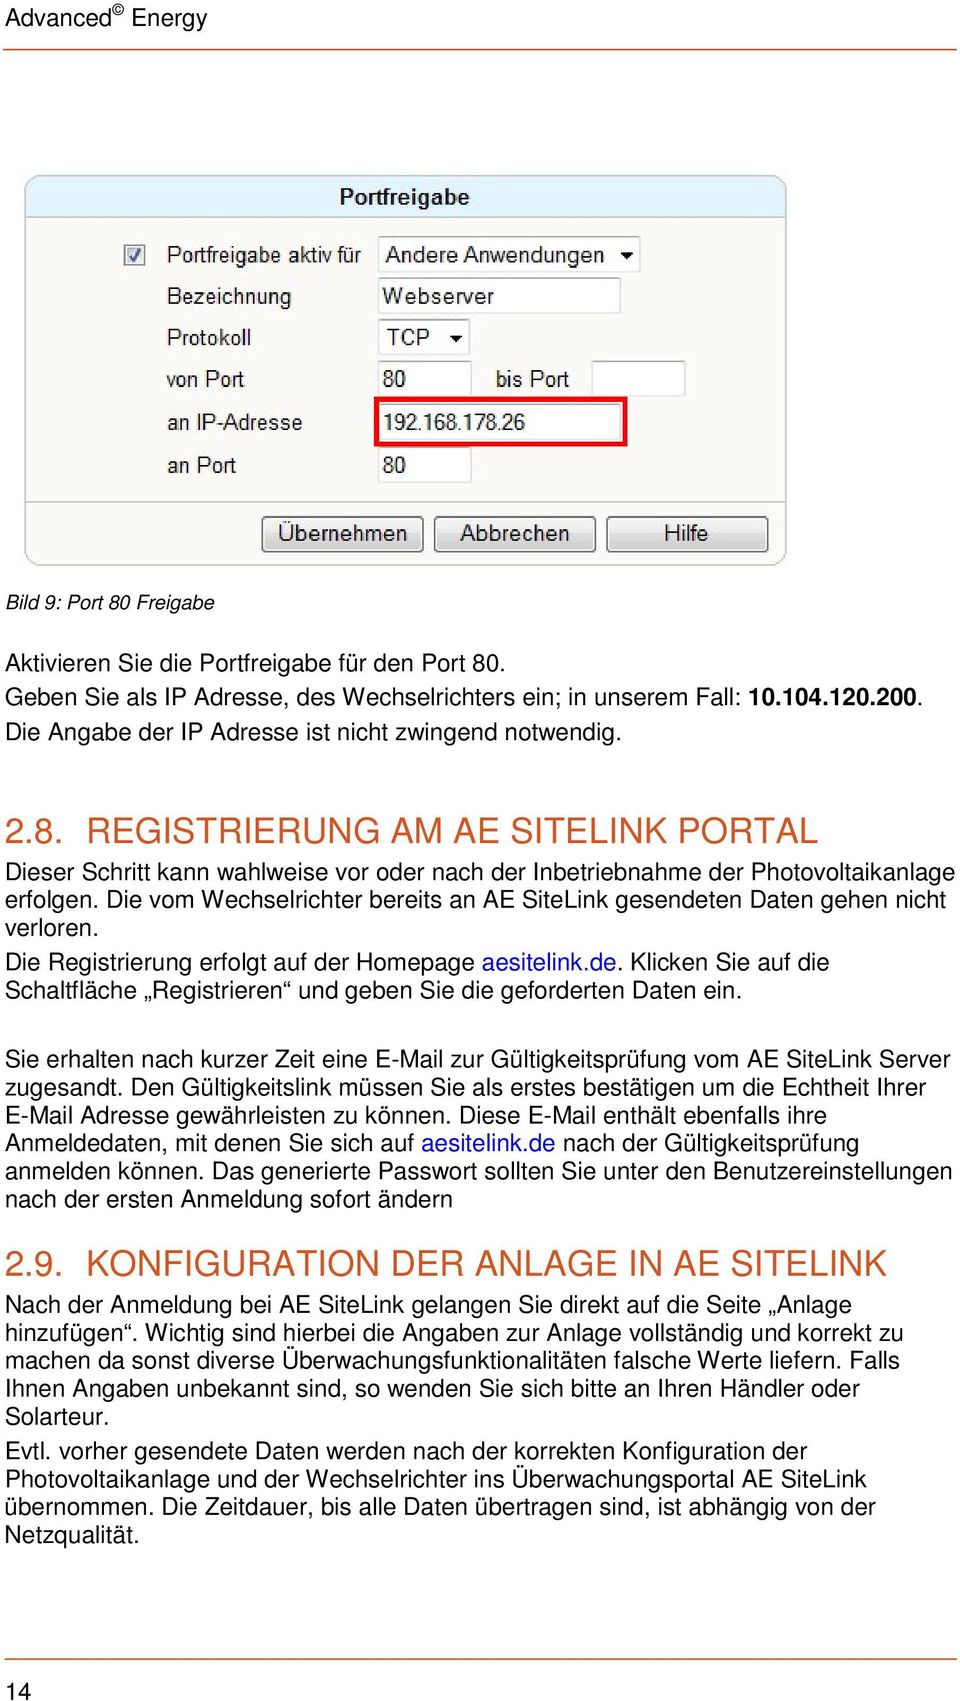 Die vom Wechselrichter bereits an AE SiteLink gesendeten Daten gehen nicht verloren. Die Registrierung erfolgt auf der Homepage aesitelink.de. Klicken Sie auf die Schaltfläche Registrieren und geben Sie die geforderten Daten ein.